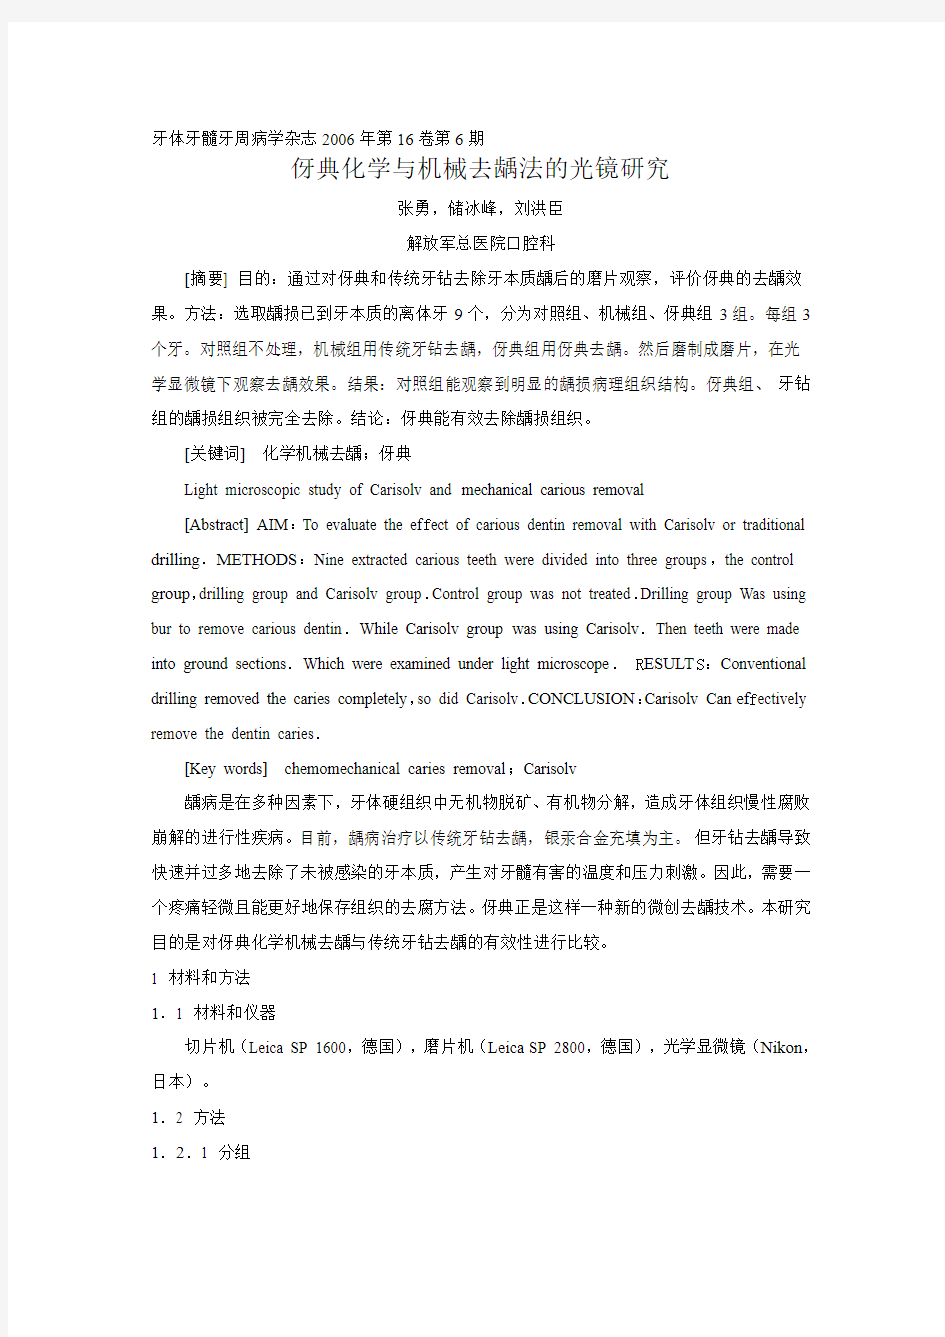 2006 -35伢典化学与机械去龋法的光镜研究(张勇,储冰峰)(北京)